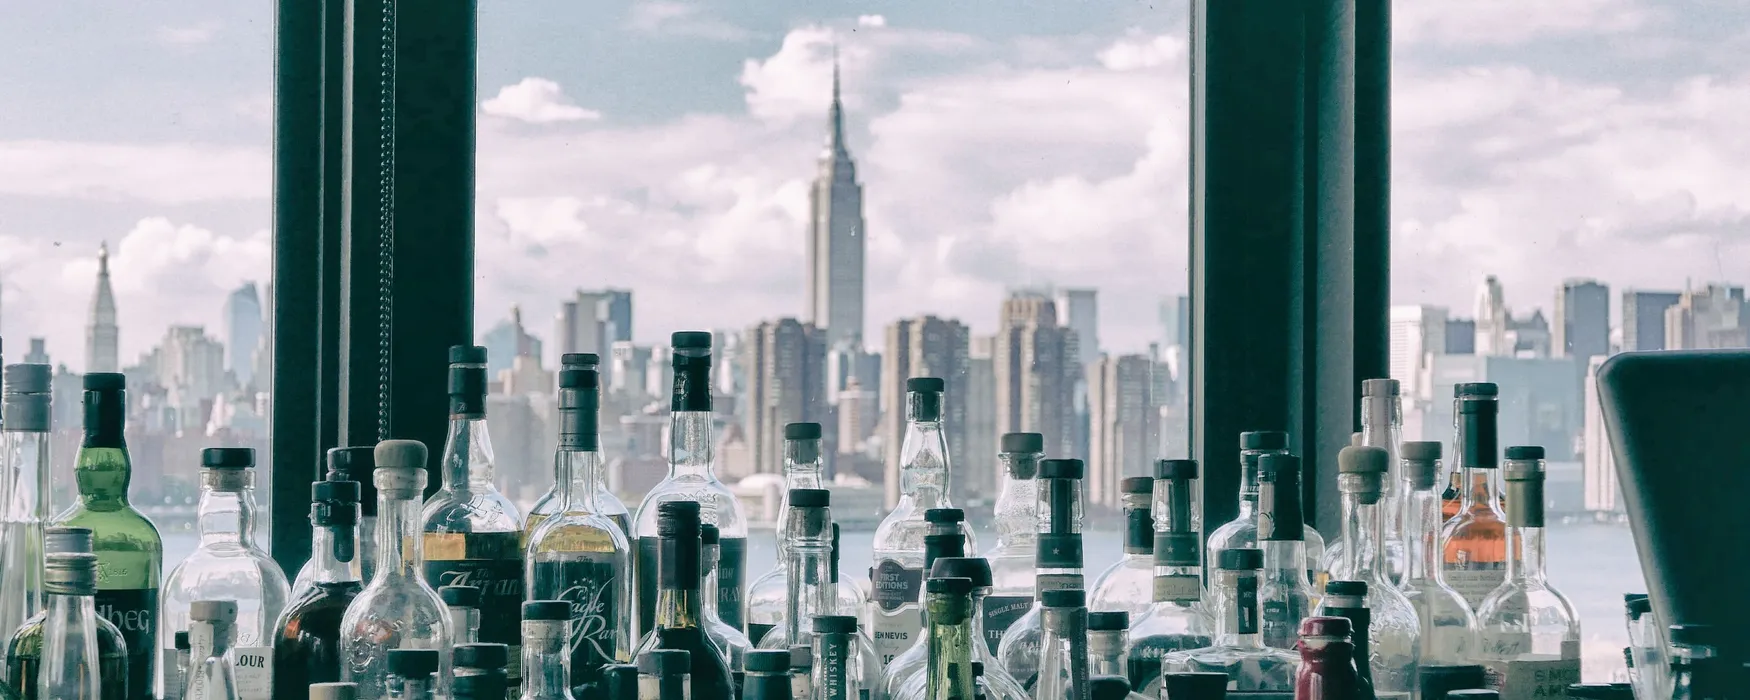 I 3 migliori rooftop a New York selezionati da Viewnary